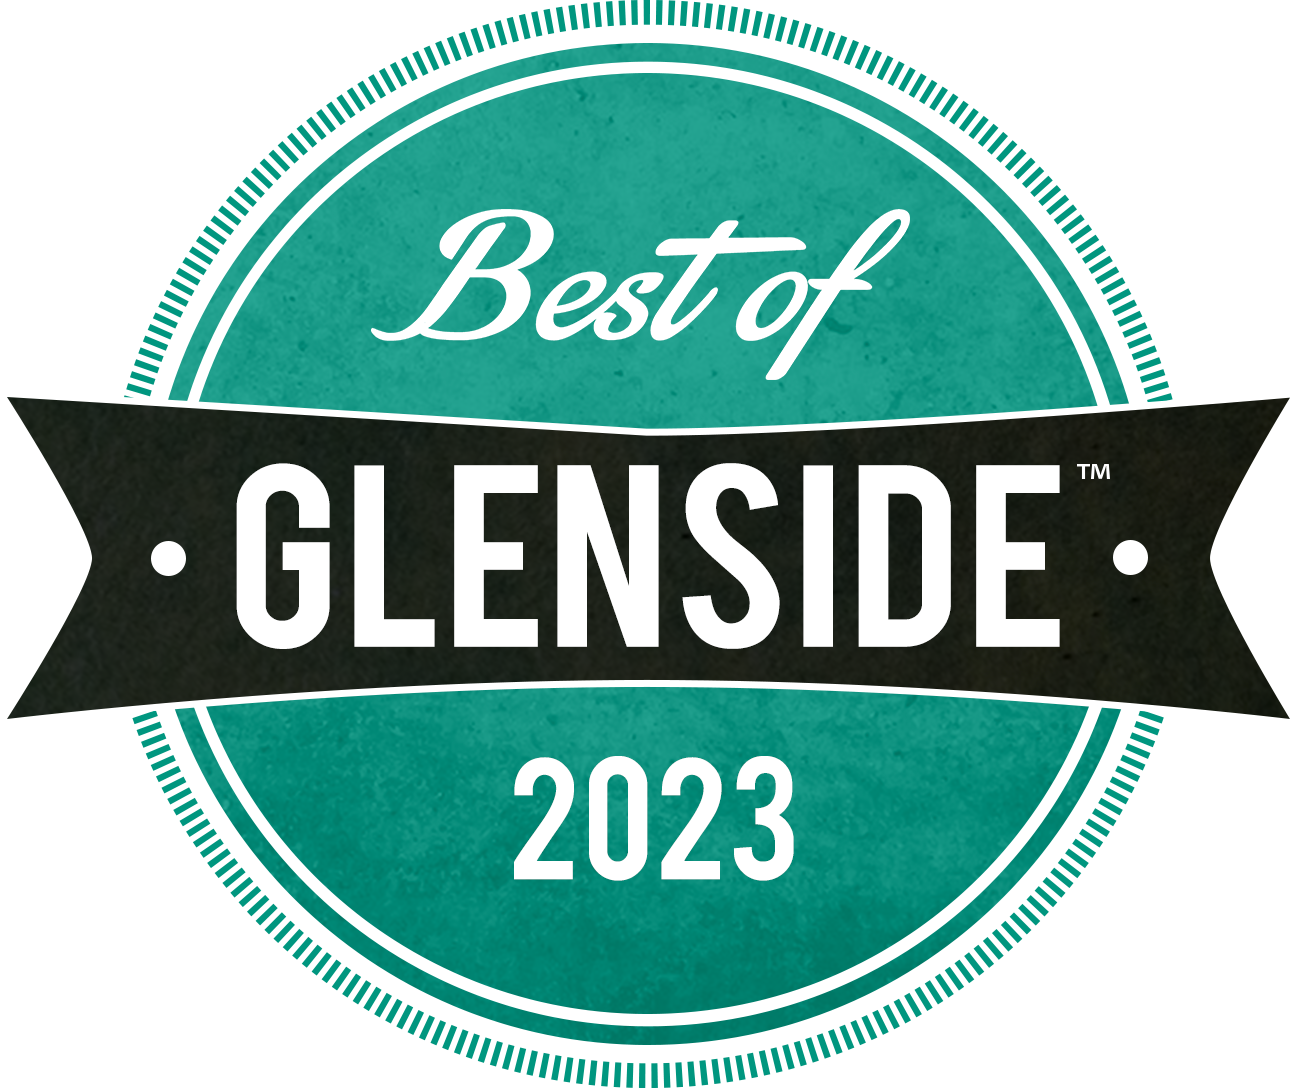 Best of Glenside 